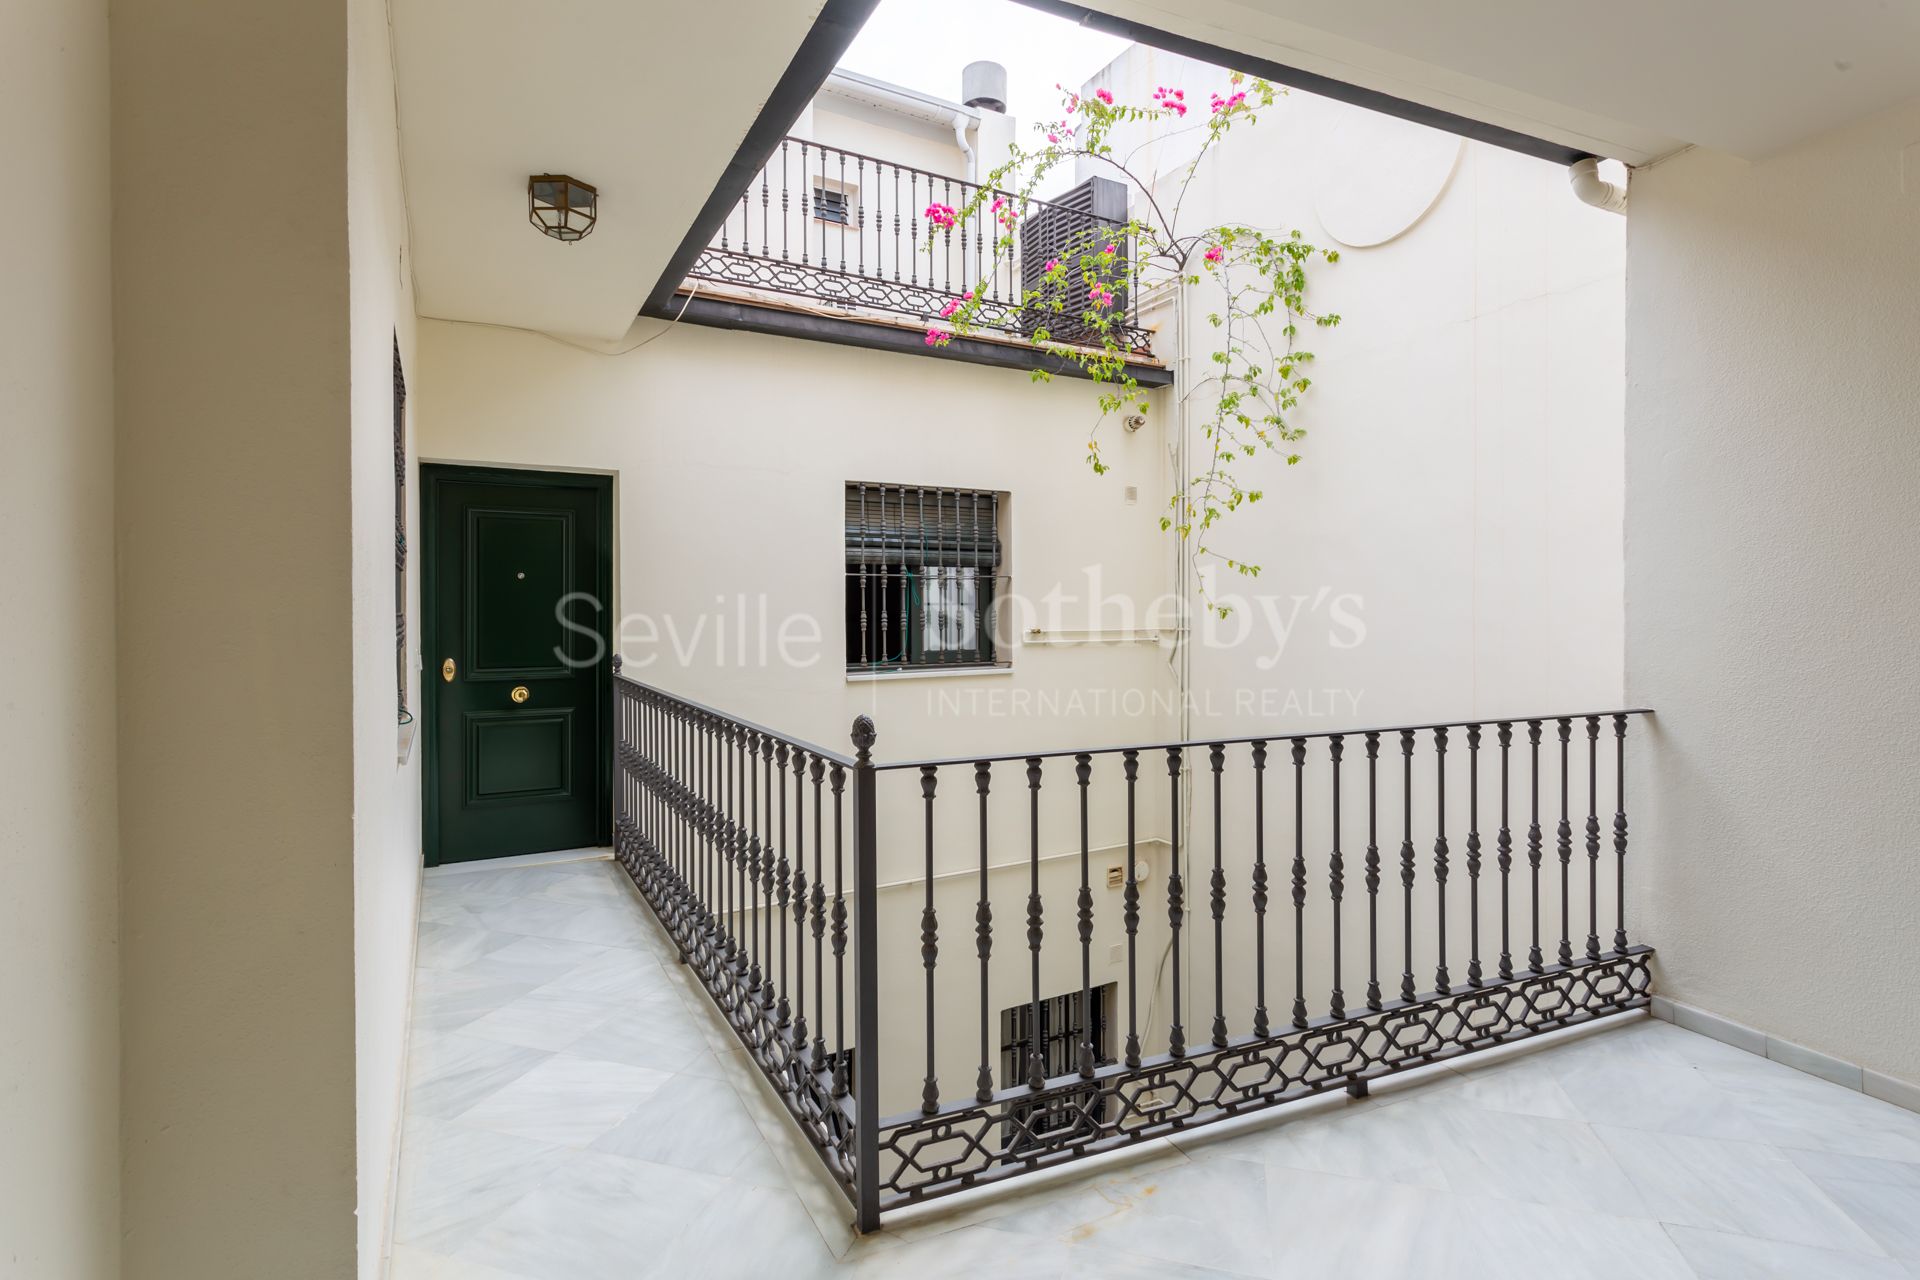 Ático dúplex en el centro de Sevilla con terraza y garaje